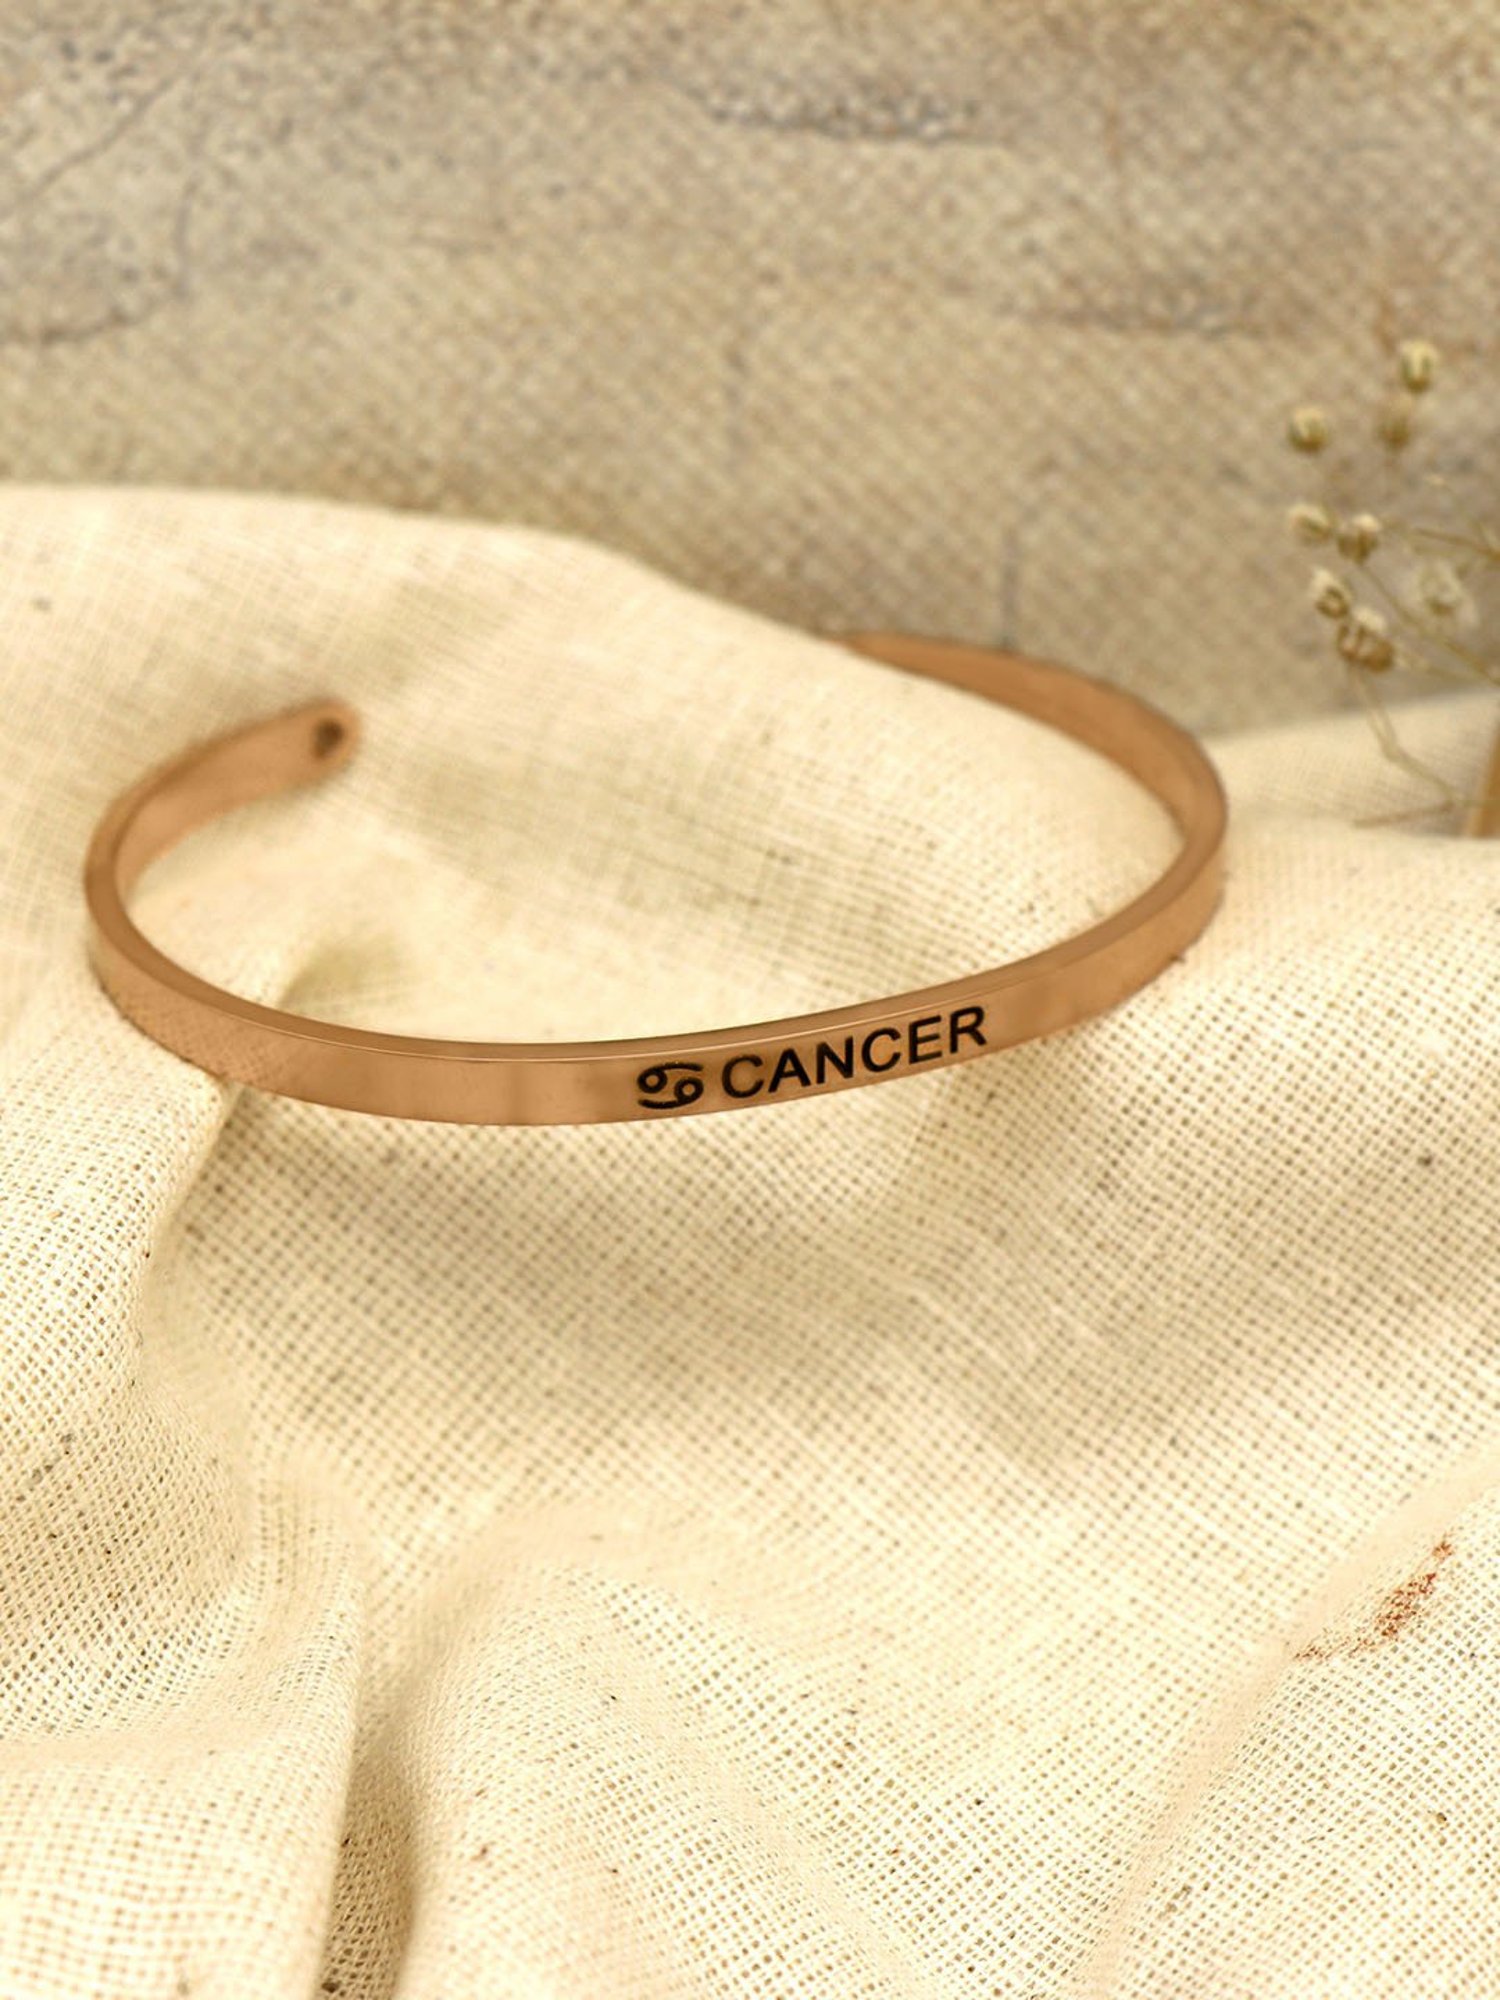 Hope Breast Cancer Ribbon Bracelet – Combat Breast Cancer